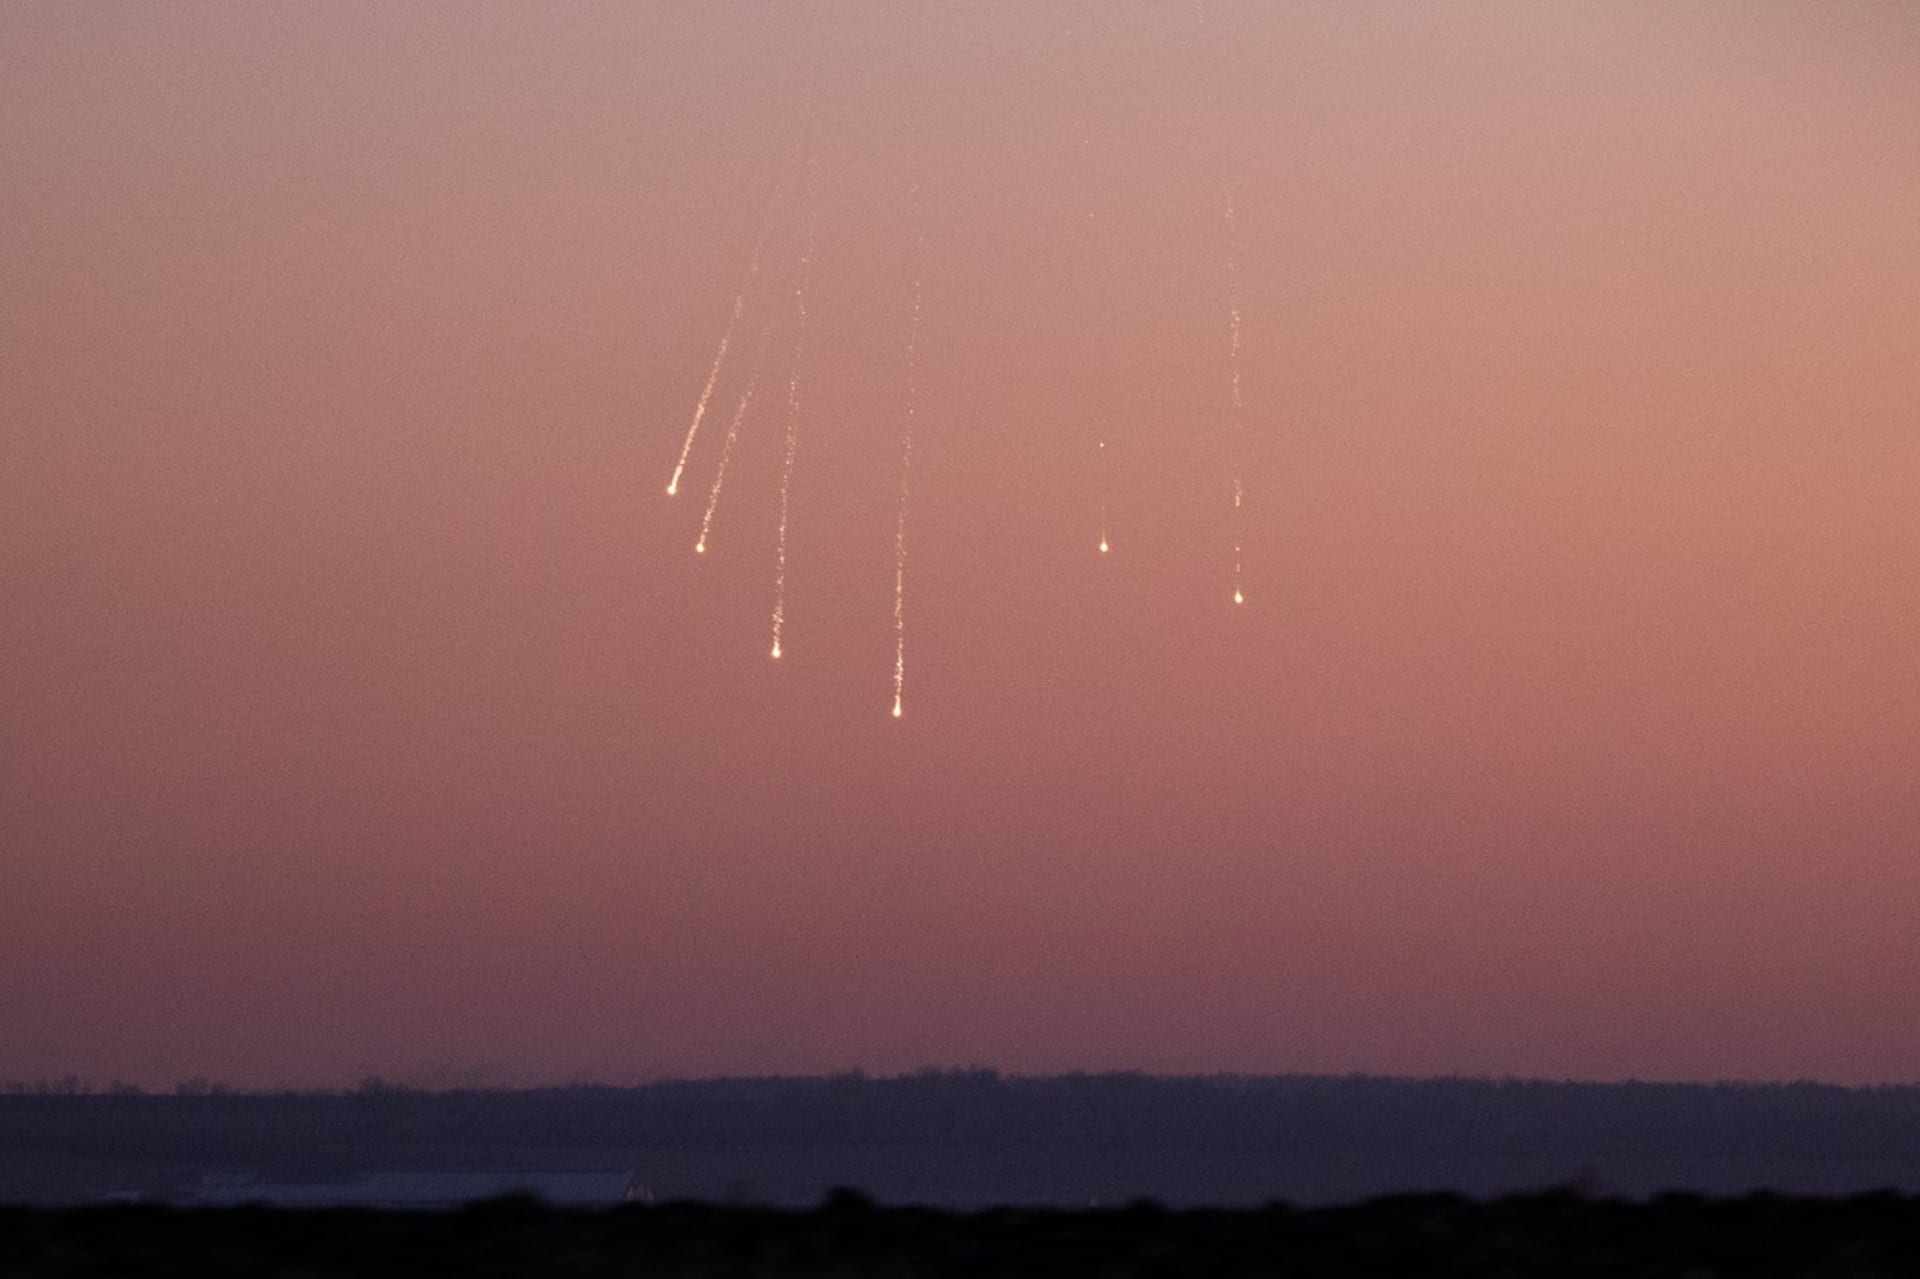 Zápalná munice (fosfor nebo termit), která se 25. ledna 2023 objevila na obloze u Bachmutu